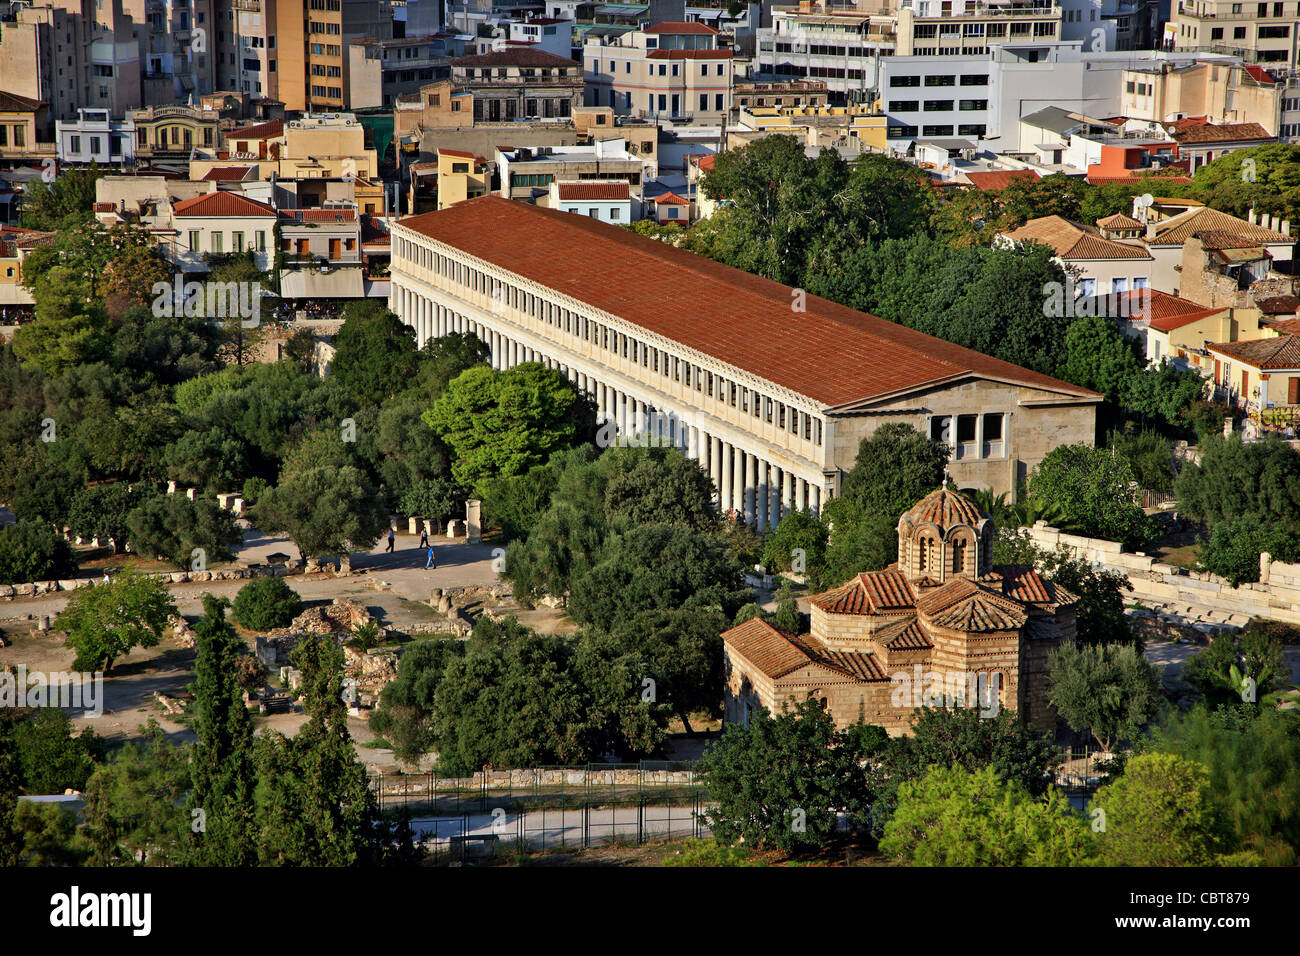 Vue panoramique, vue partielle de la grande partie de l'Agora antique d'Athènes, Grèce Banque D'Images